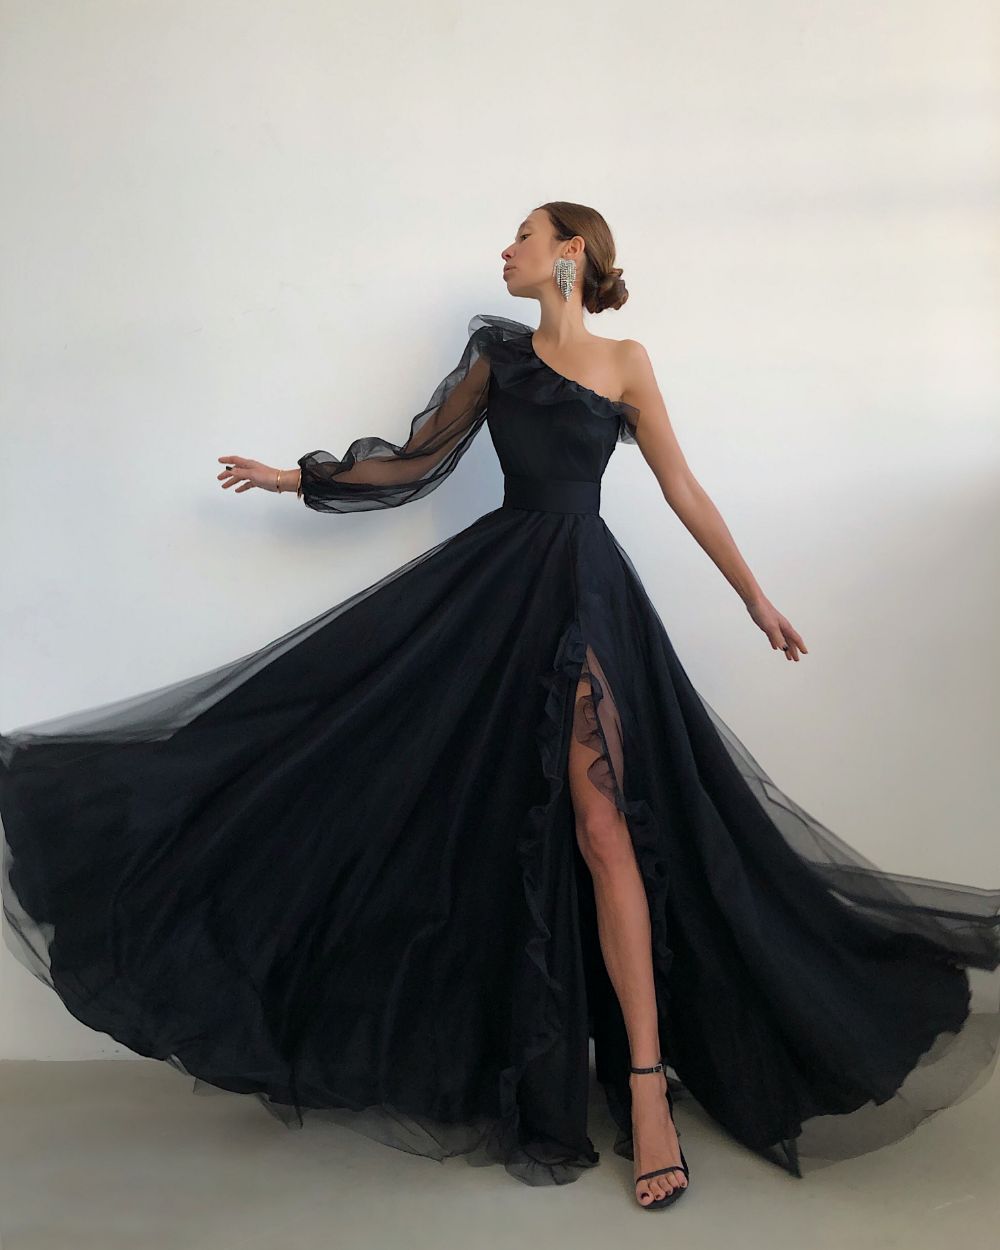 LTP0619,Black one shoulder prom dress with ruffles side slit long evening formal dresses